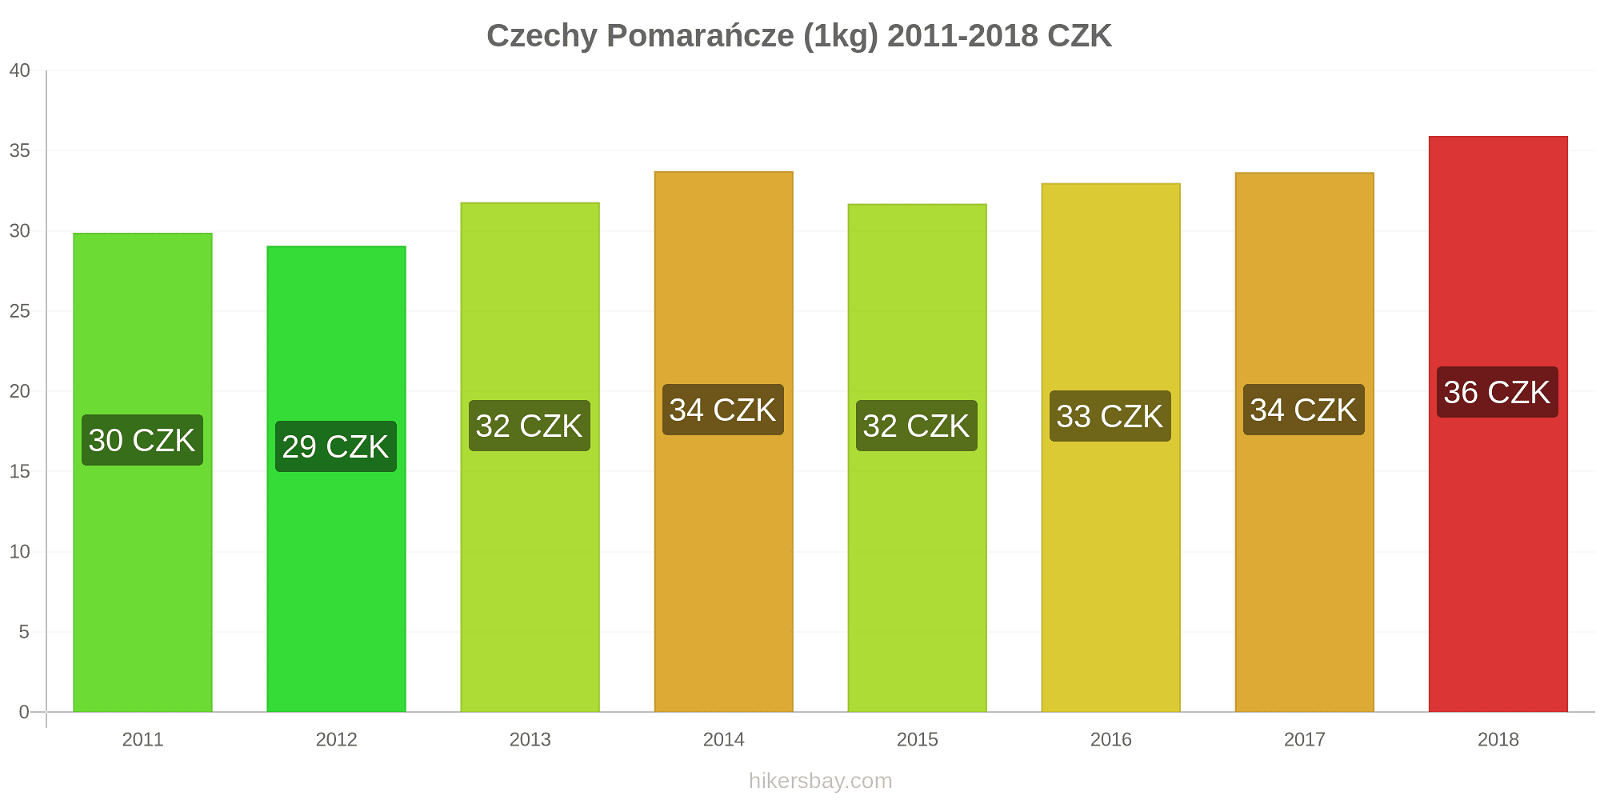 Czechy zmiany cen Pomarańcze (1kg) hikersbay.com